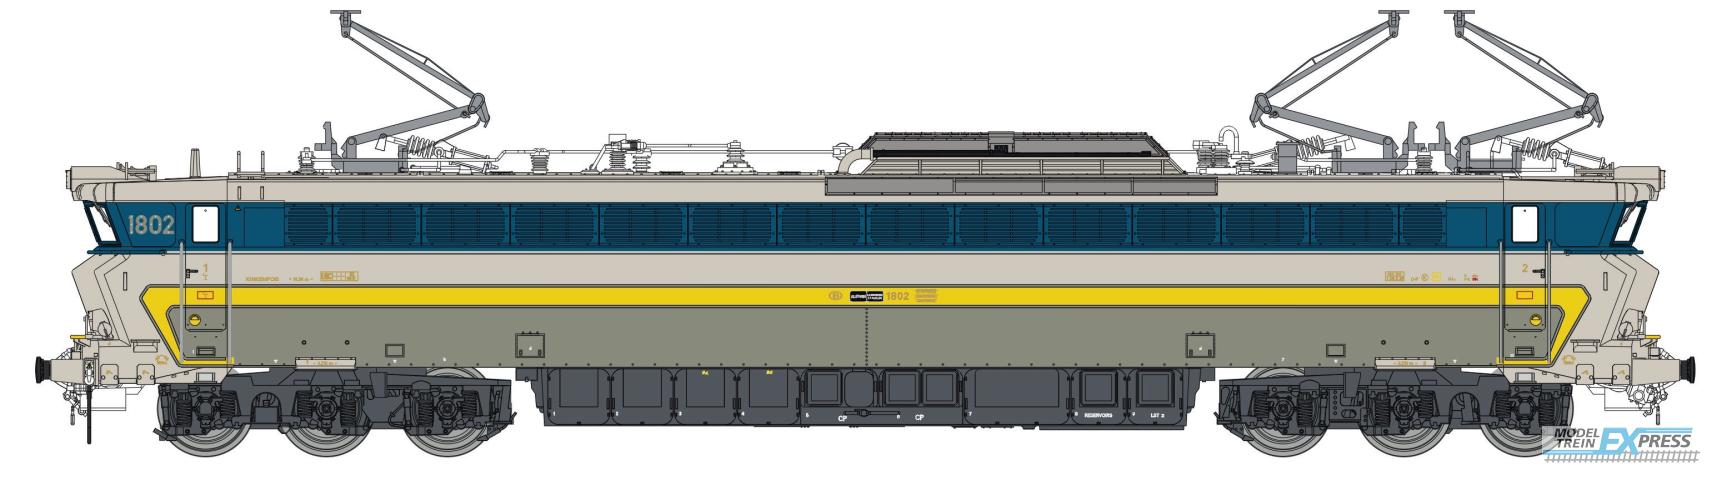 LS Models 12051 1802, grijs/inox, gele en licht blauwe band, nieuwe kolpampen  /  Ep. IVB  /  SNCB  /  HO  /  DC  /  1 P.